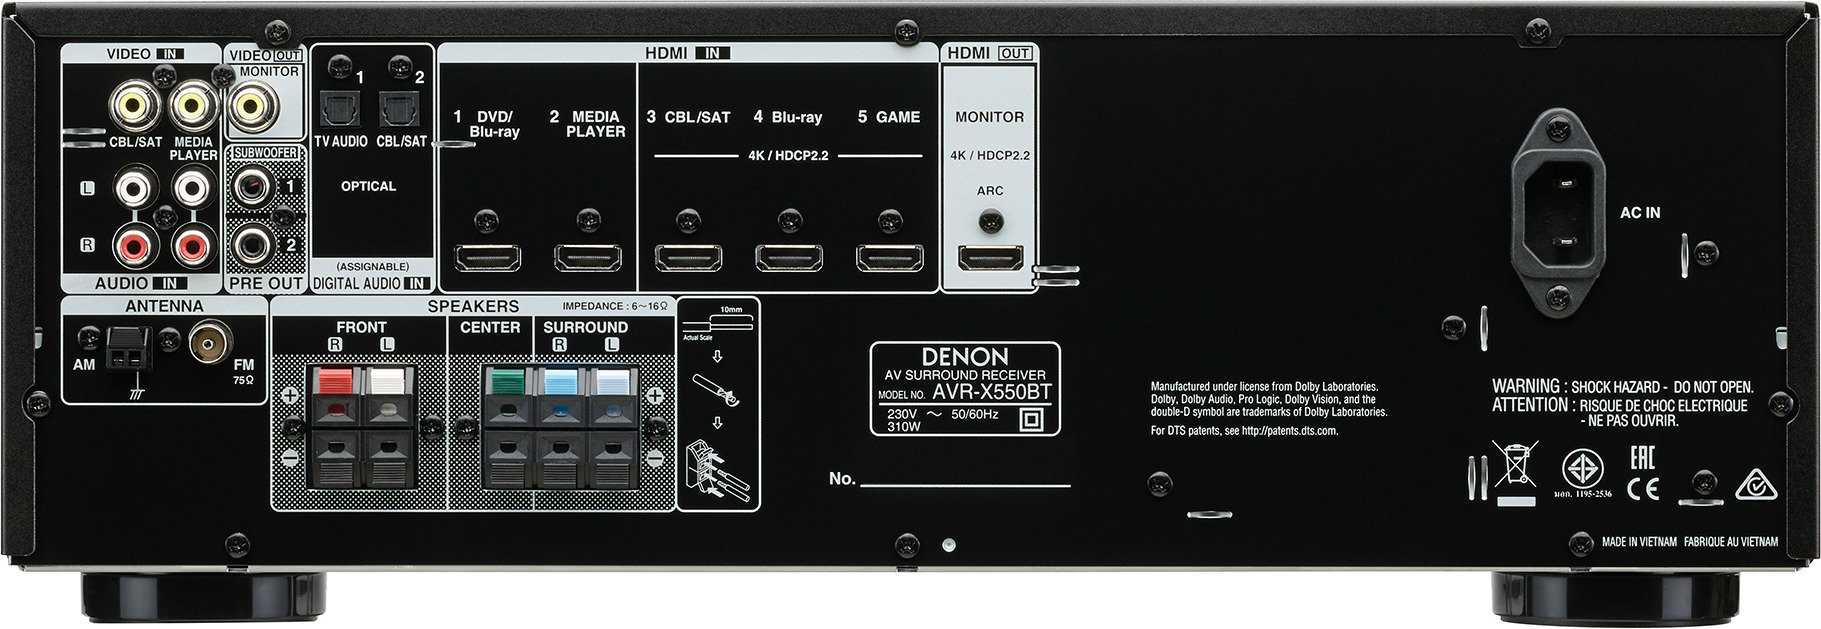 Denon avr-x8500h 13.2ch imax enhanced av receiver review  | audioholics